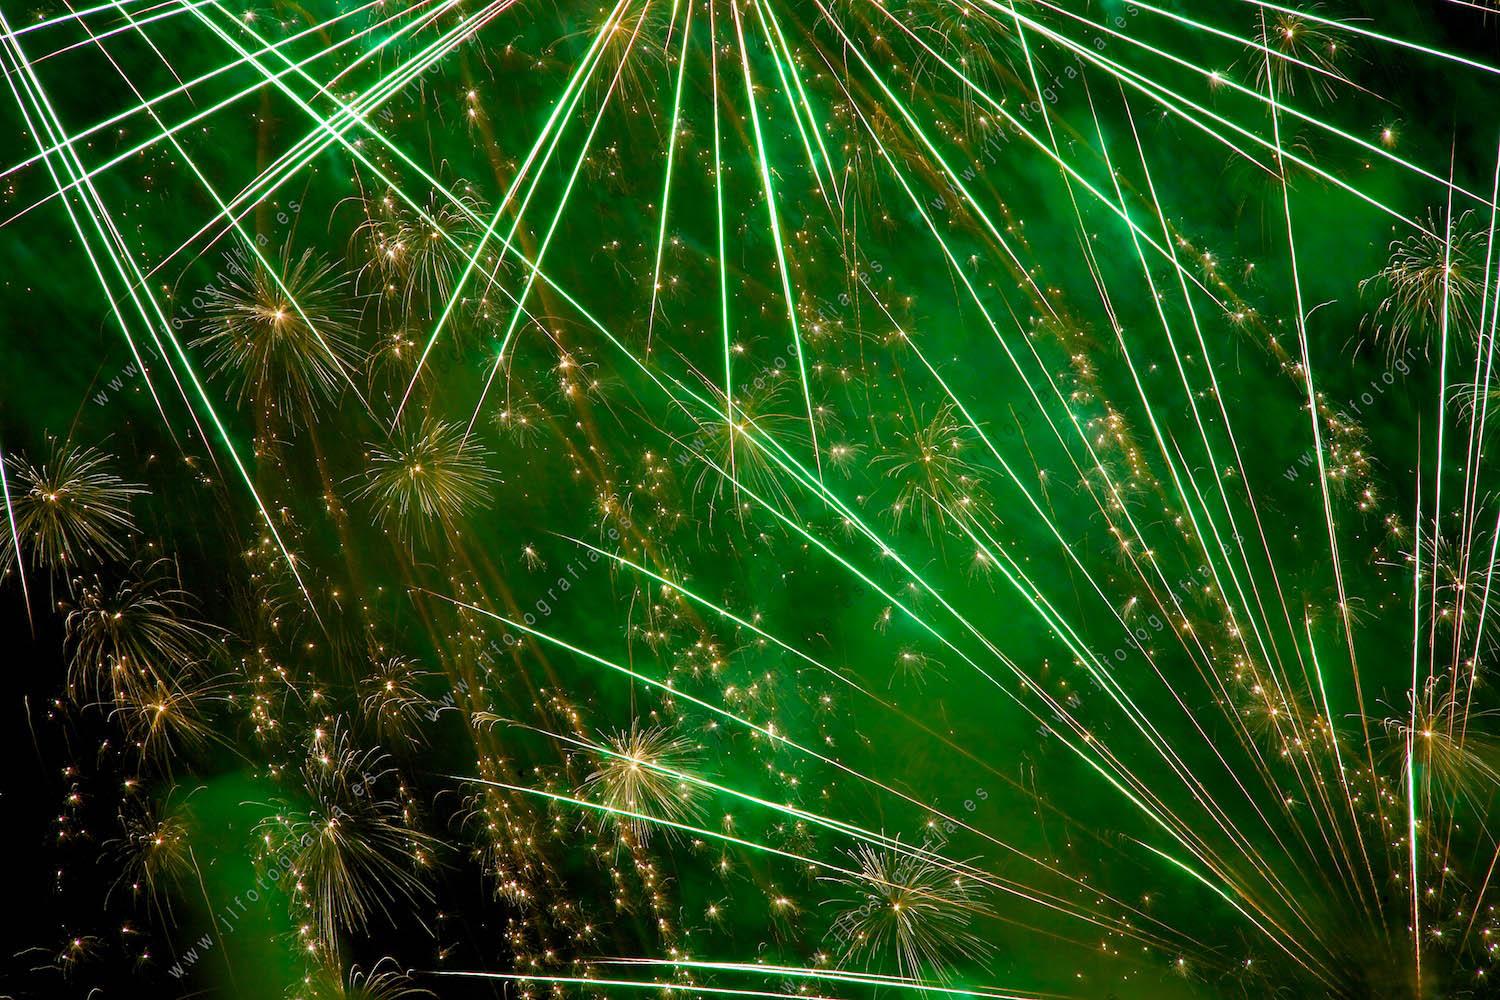 Fotografía de fuegos artificiales de la semana grande de fiestas de Bilbao, detalle de fuegos constelación de explosiones verdes